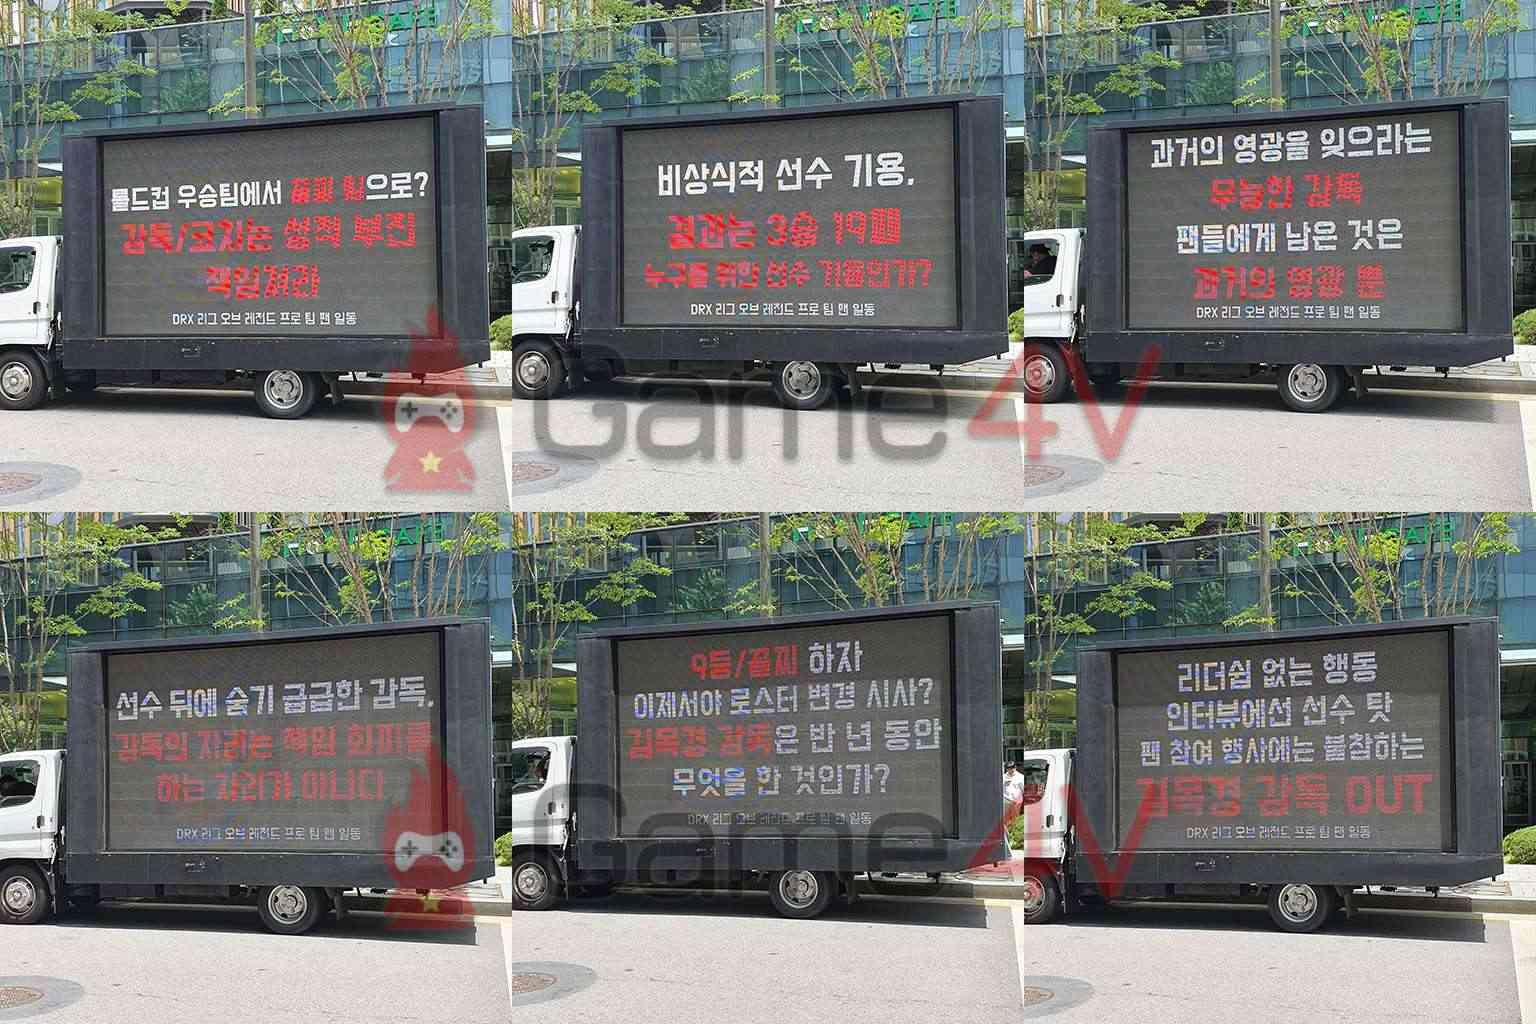 Xe tải của fan LMHT Hàn Quốc gửi đến rất nhiều thông điều khác nhau.